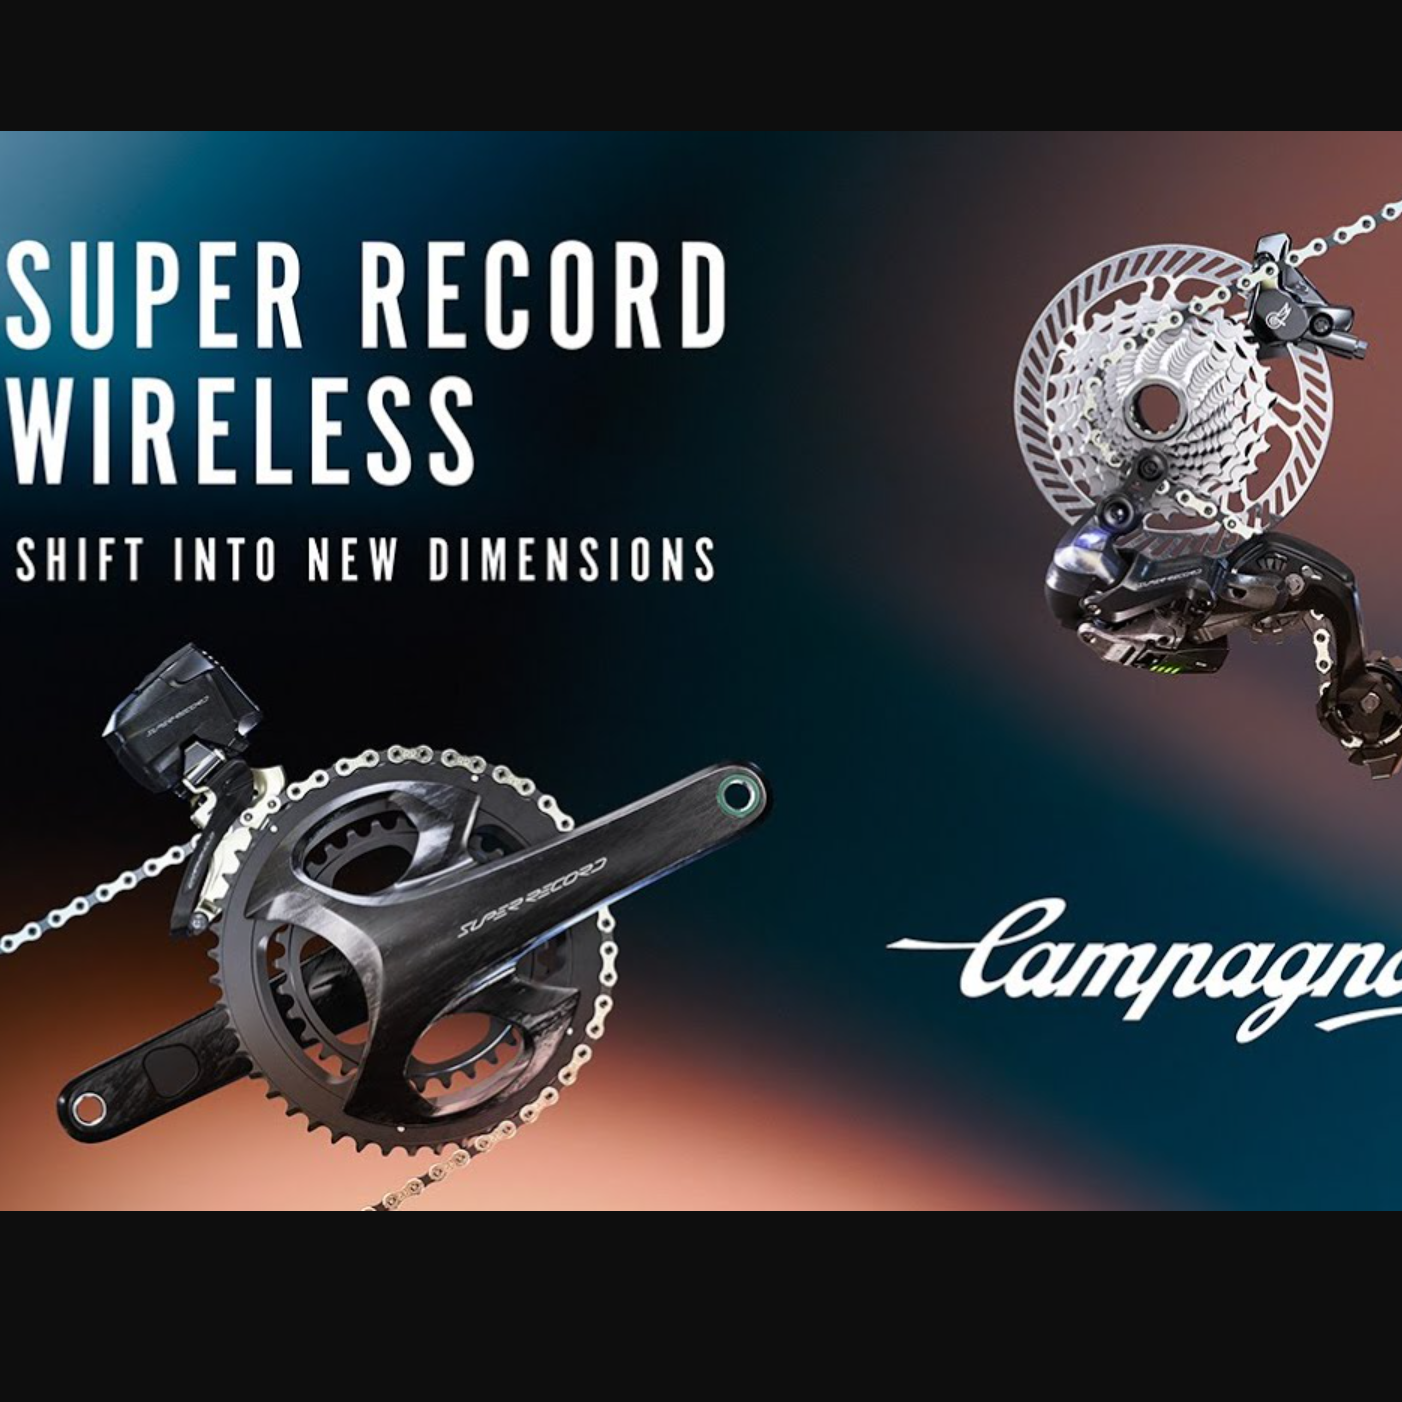 Campagnolo Super Record wireless